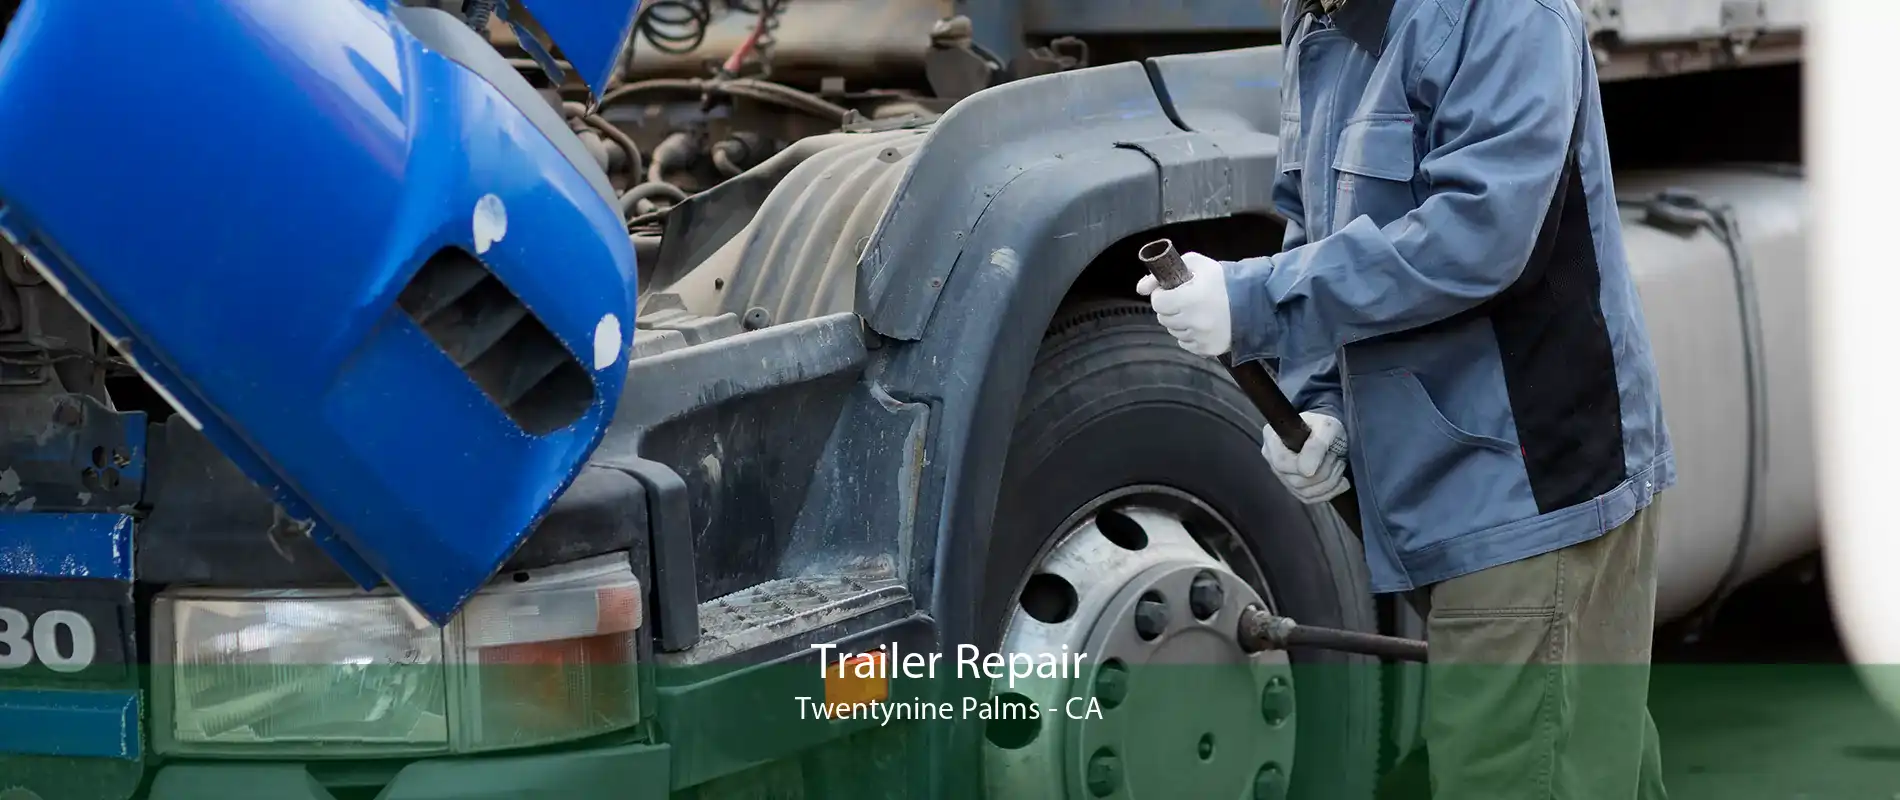 Trailer Repair Twentynine Palms - CA